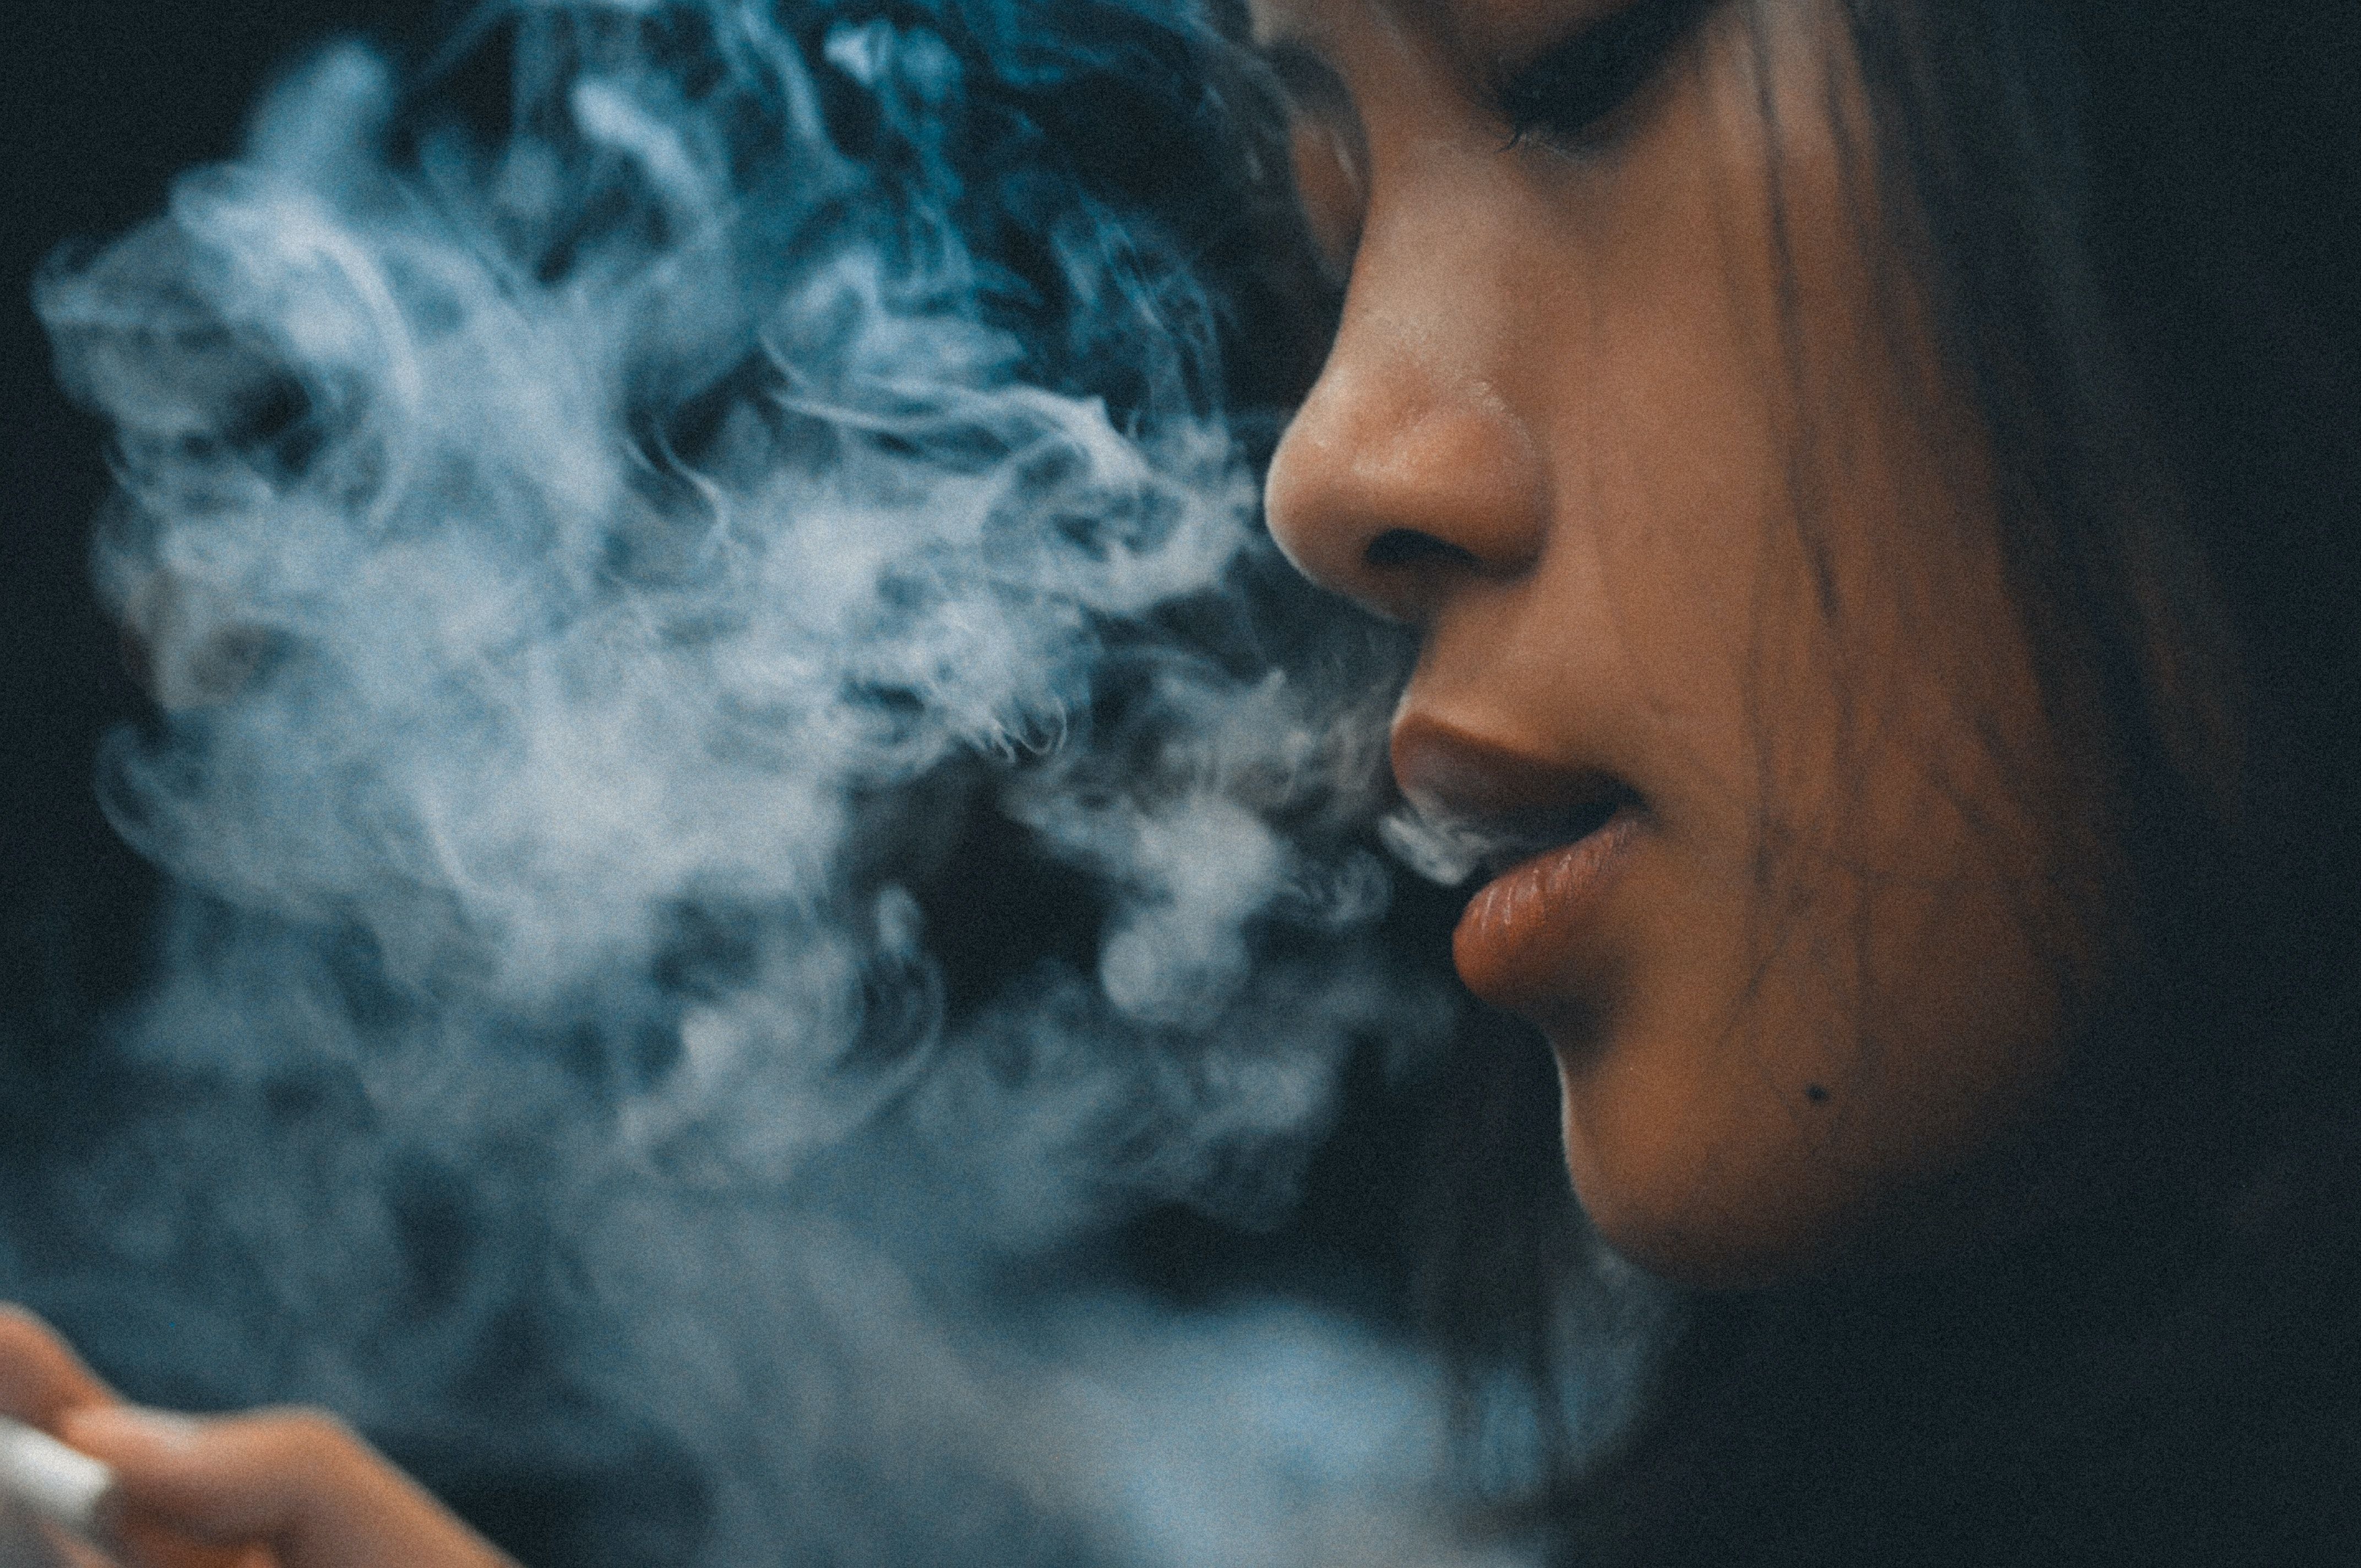 Bilde av ung jente som puster ut røyk